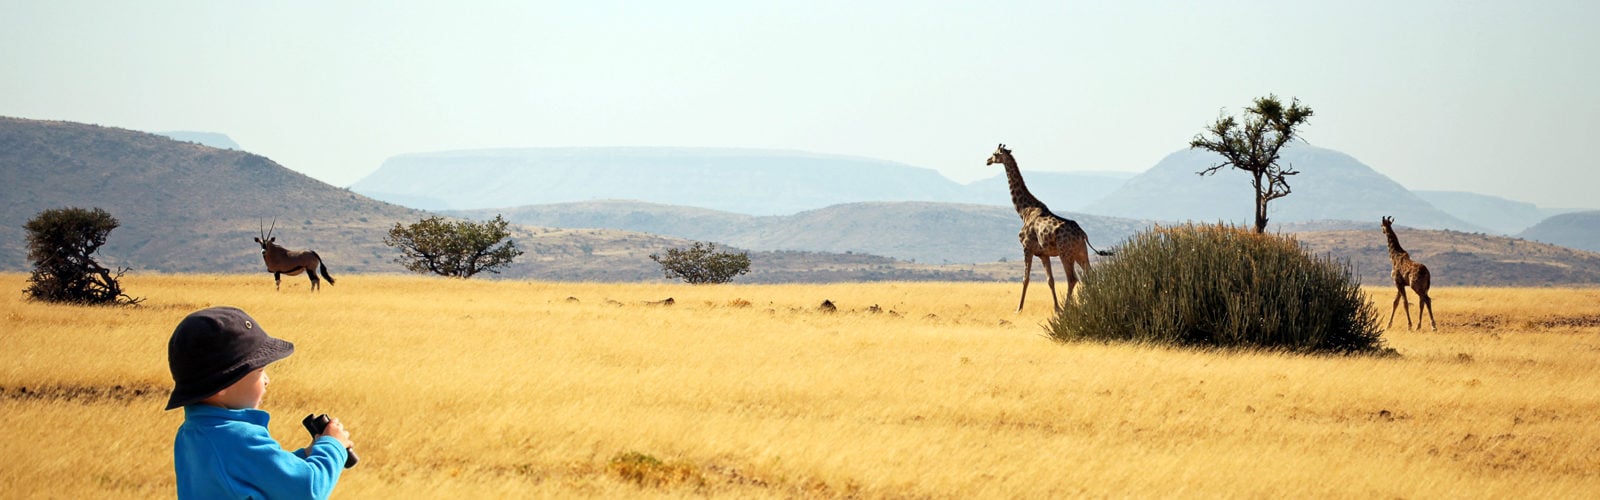 Giraffe spotting safari